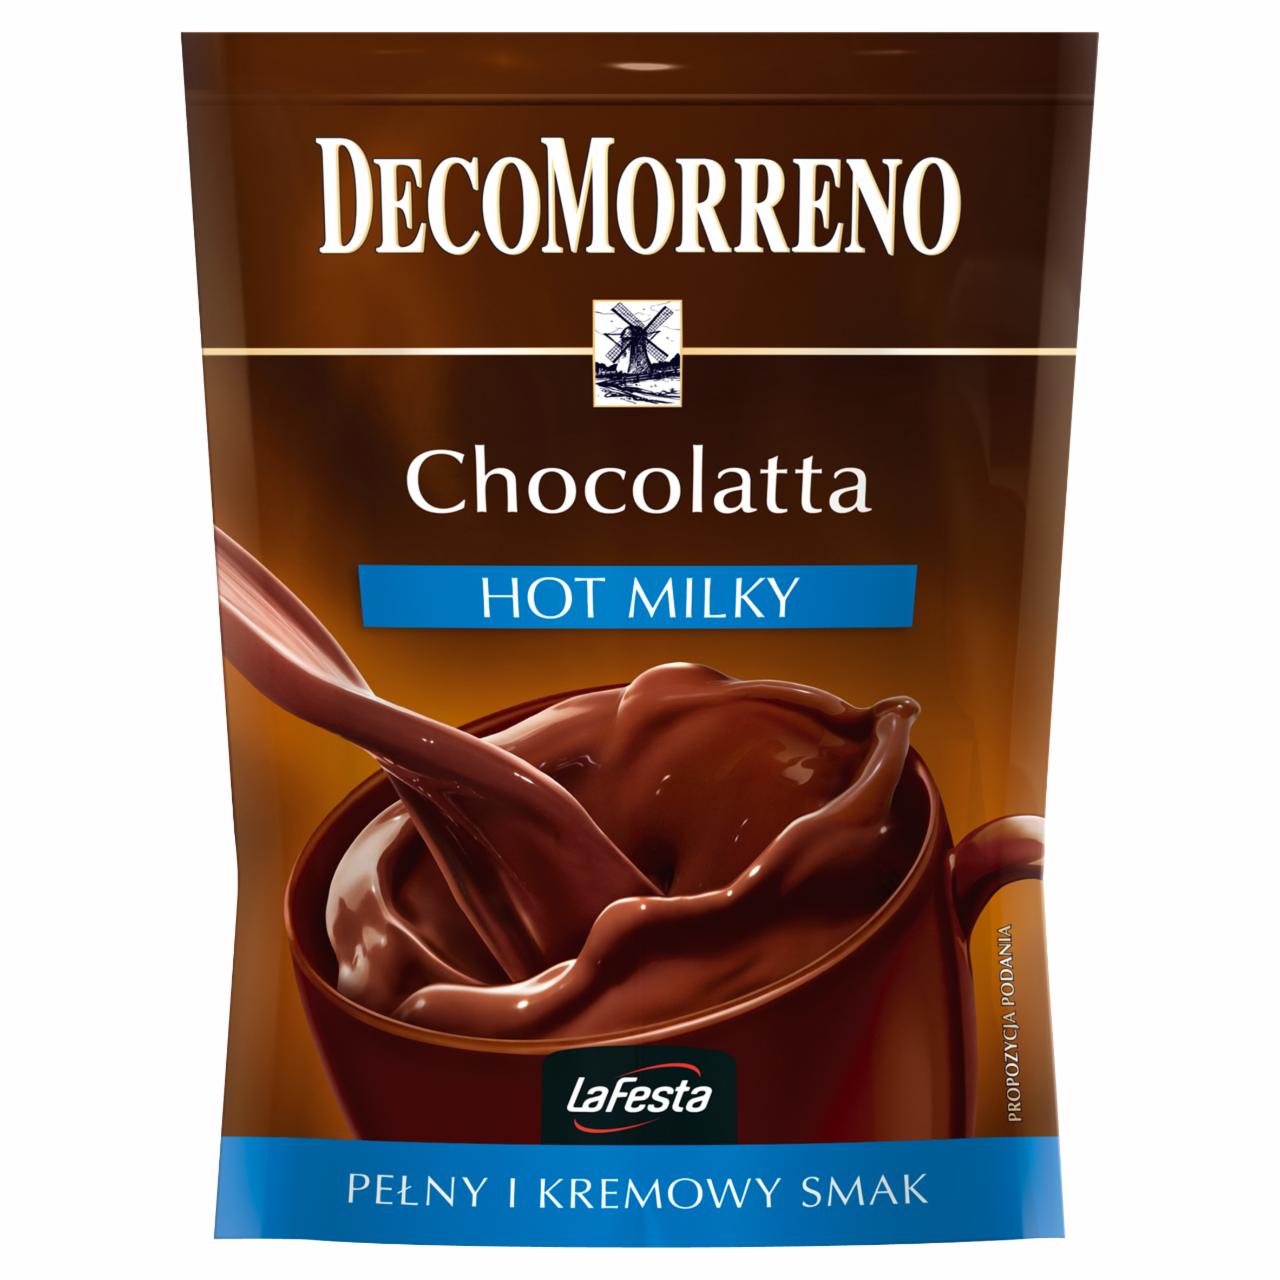 Zdjęcia - DecoMorreno Hot Milky Napój instant o smaku czekolady mlecznej 150 g